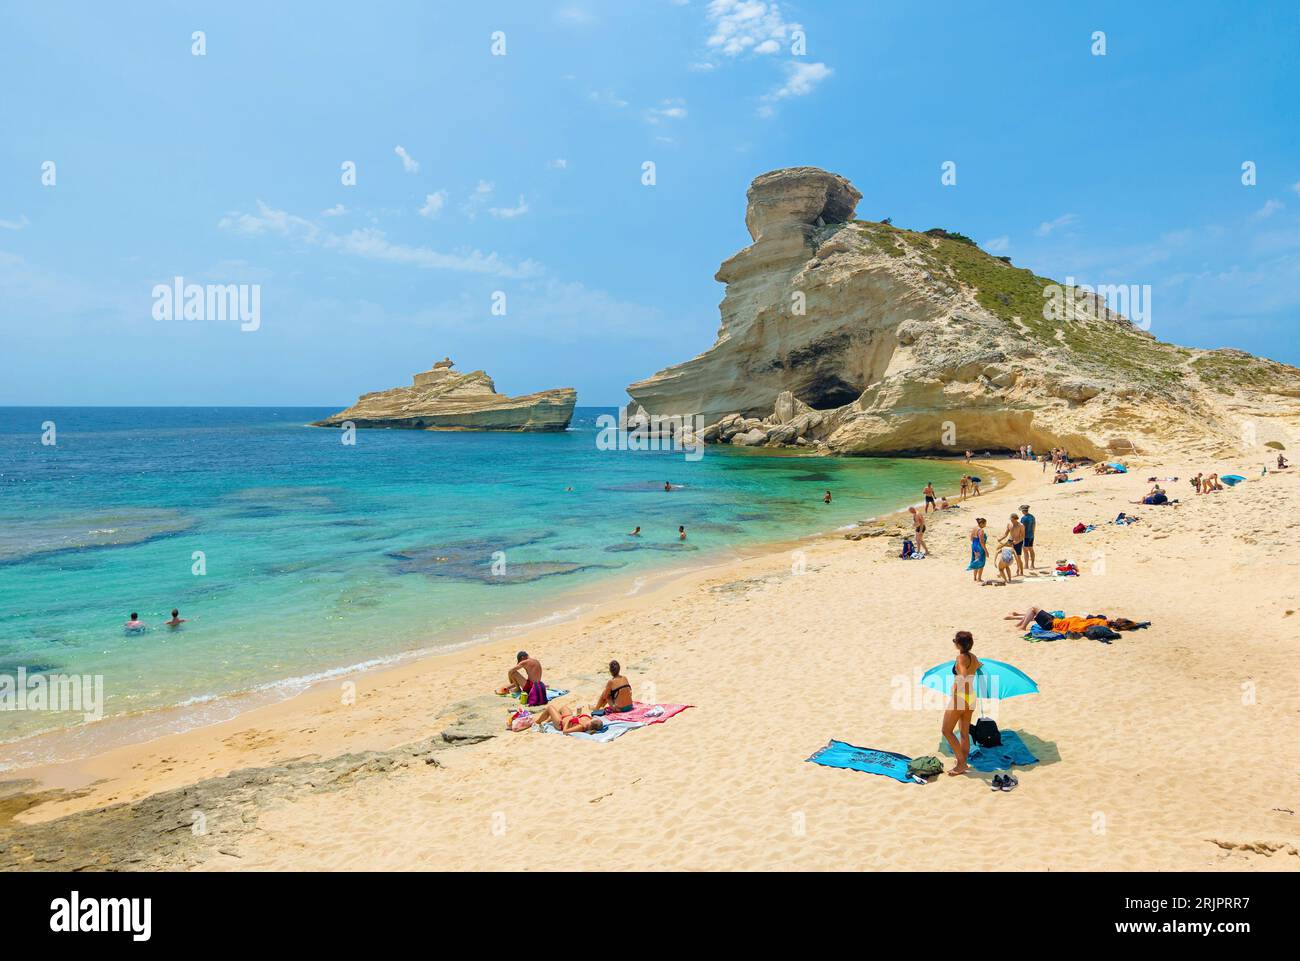 Bonifacio (Corse, France) - la Corse est une grande île française en Méditerranée, à côté de l'Italie. Ici ville de Bonifacio avec plages Fazzio, Saint Antoine Banque D'Images